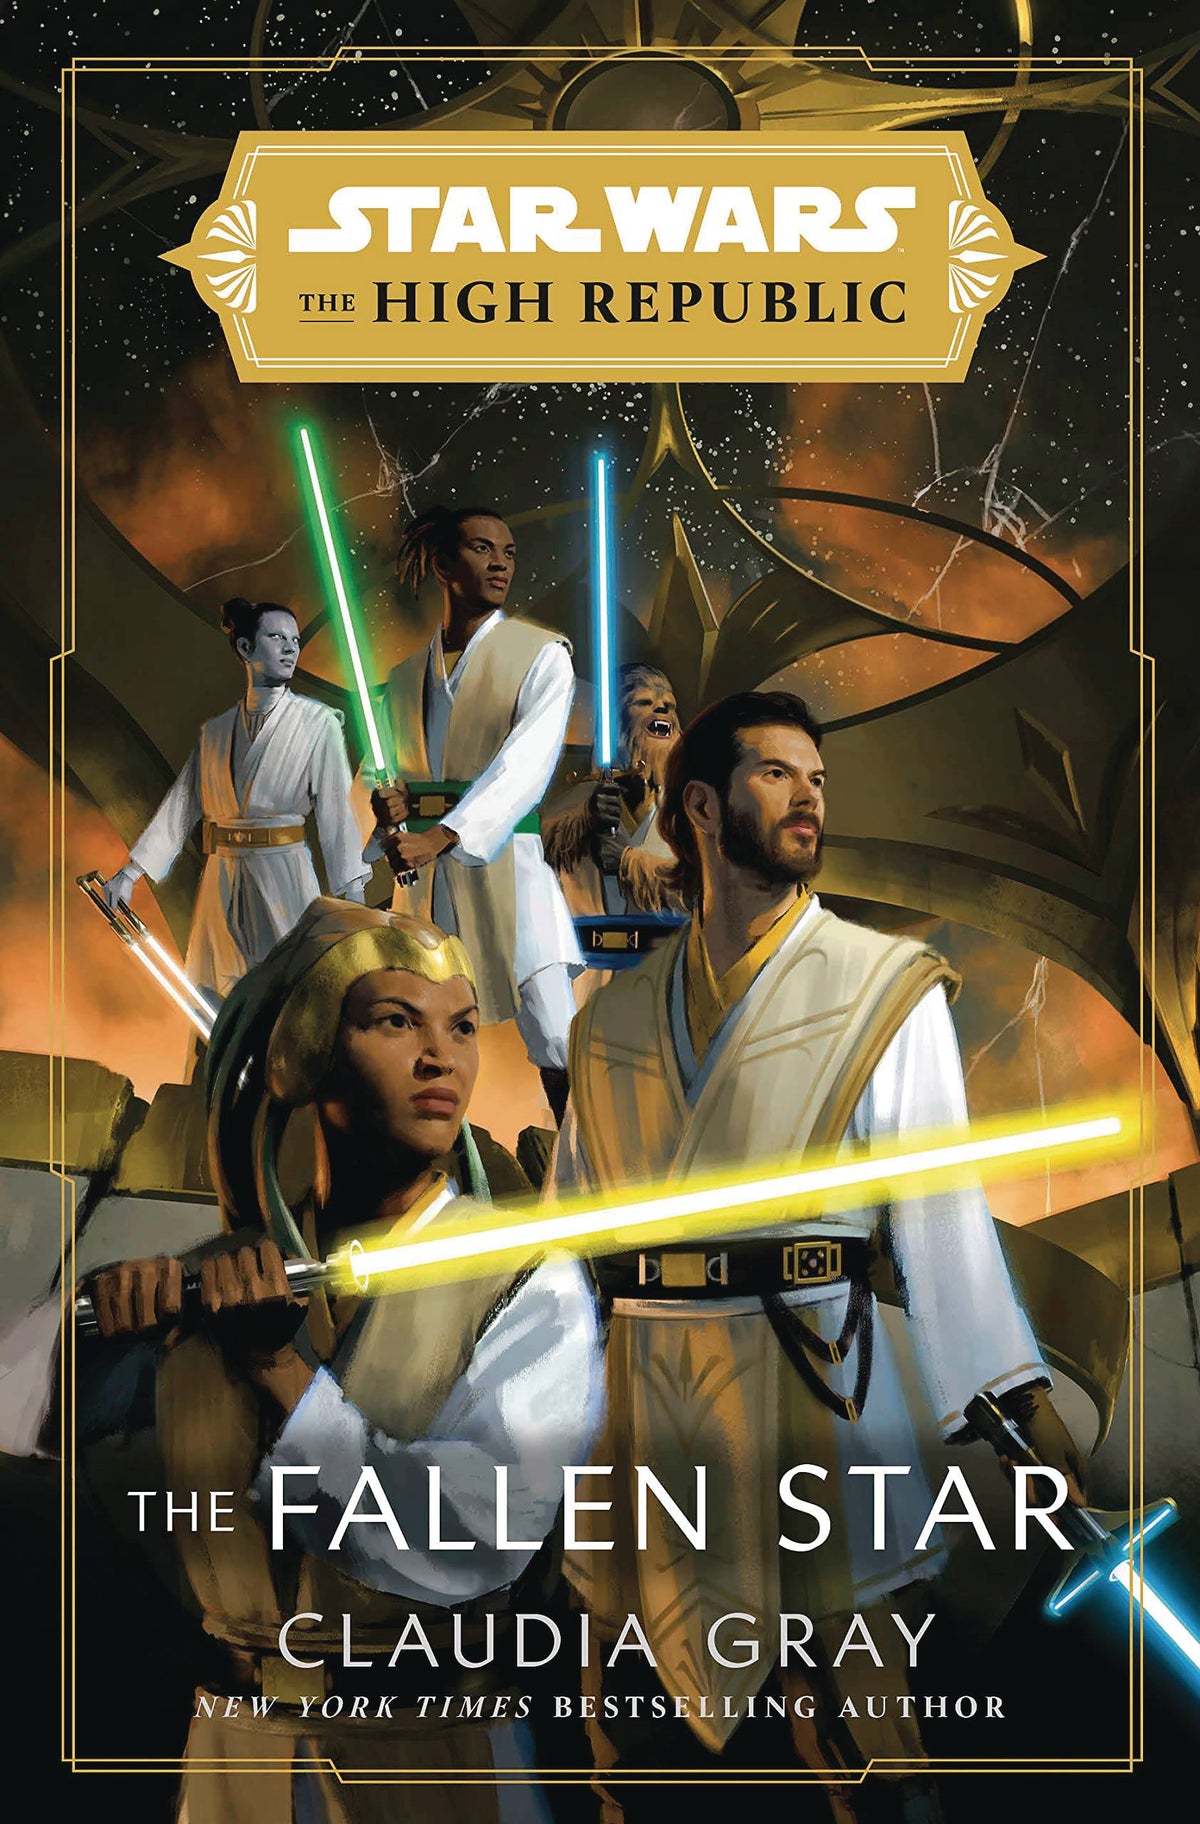 Star Wars High Republic Hc Novel The Fallen Star - State of Comics